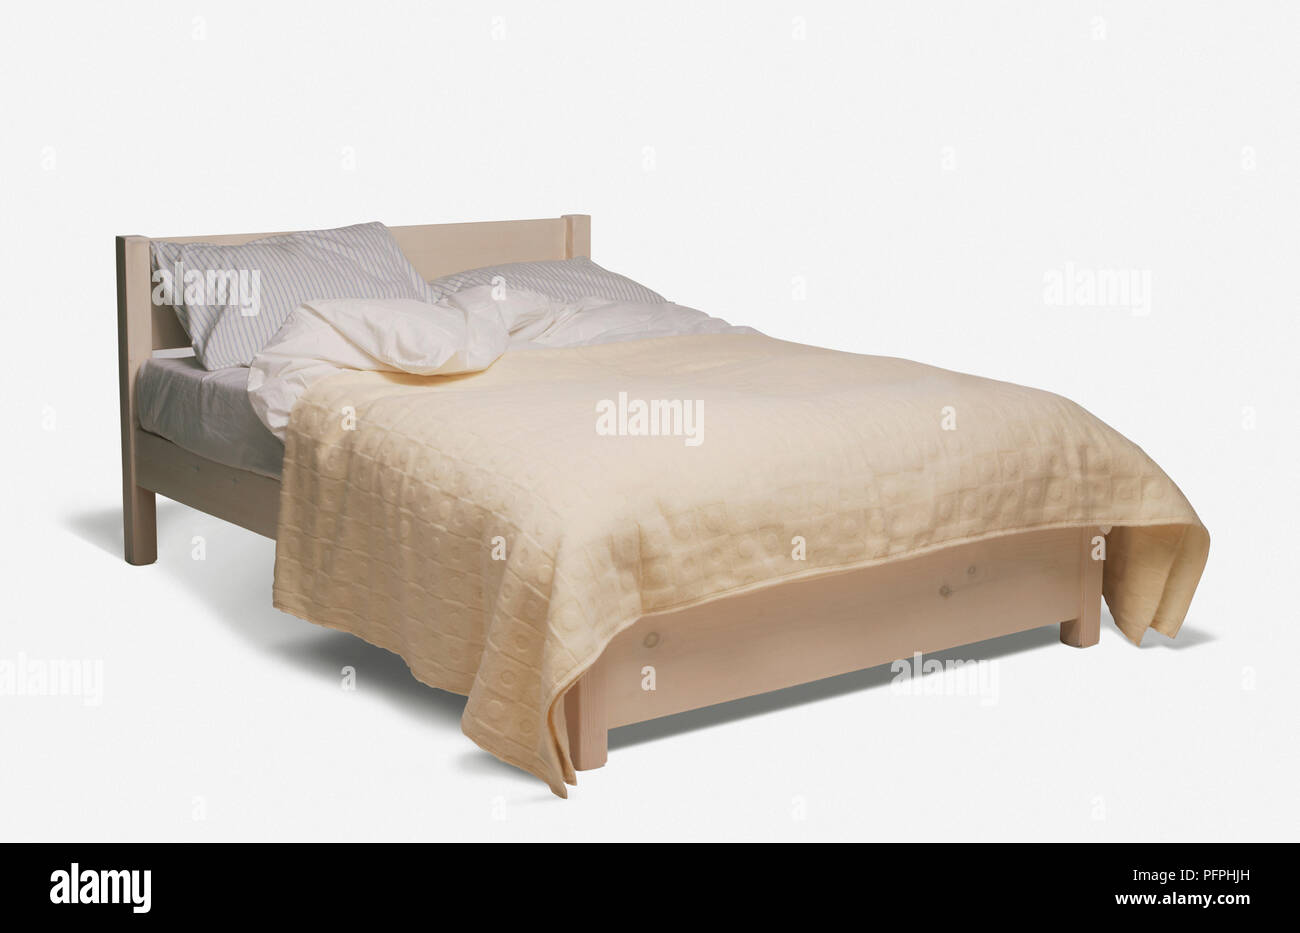 Doppelbett mit einfachen Holzrahmen, Kissen, Bettdecke und Creme bett Abdeckung Stockfoto